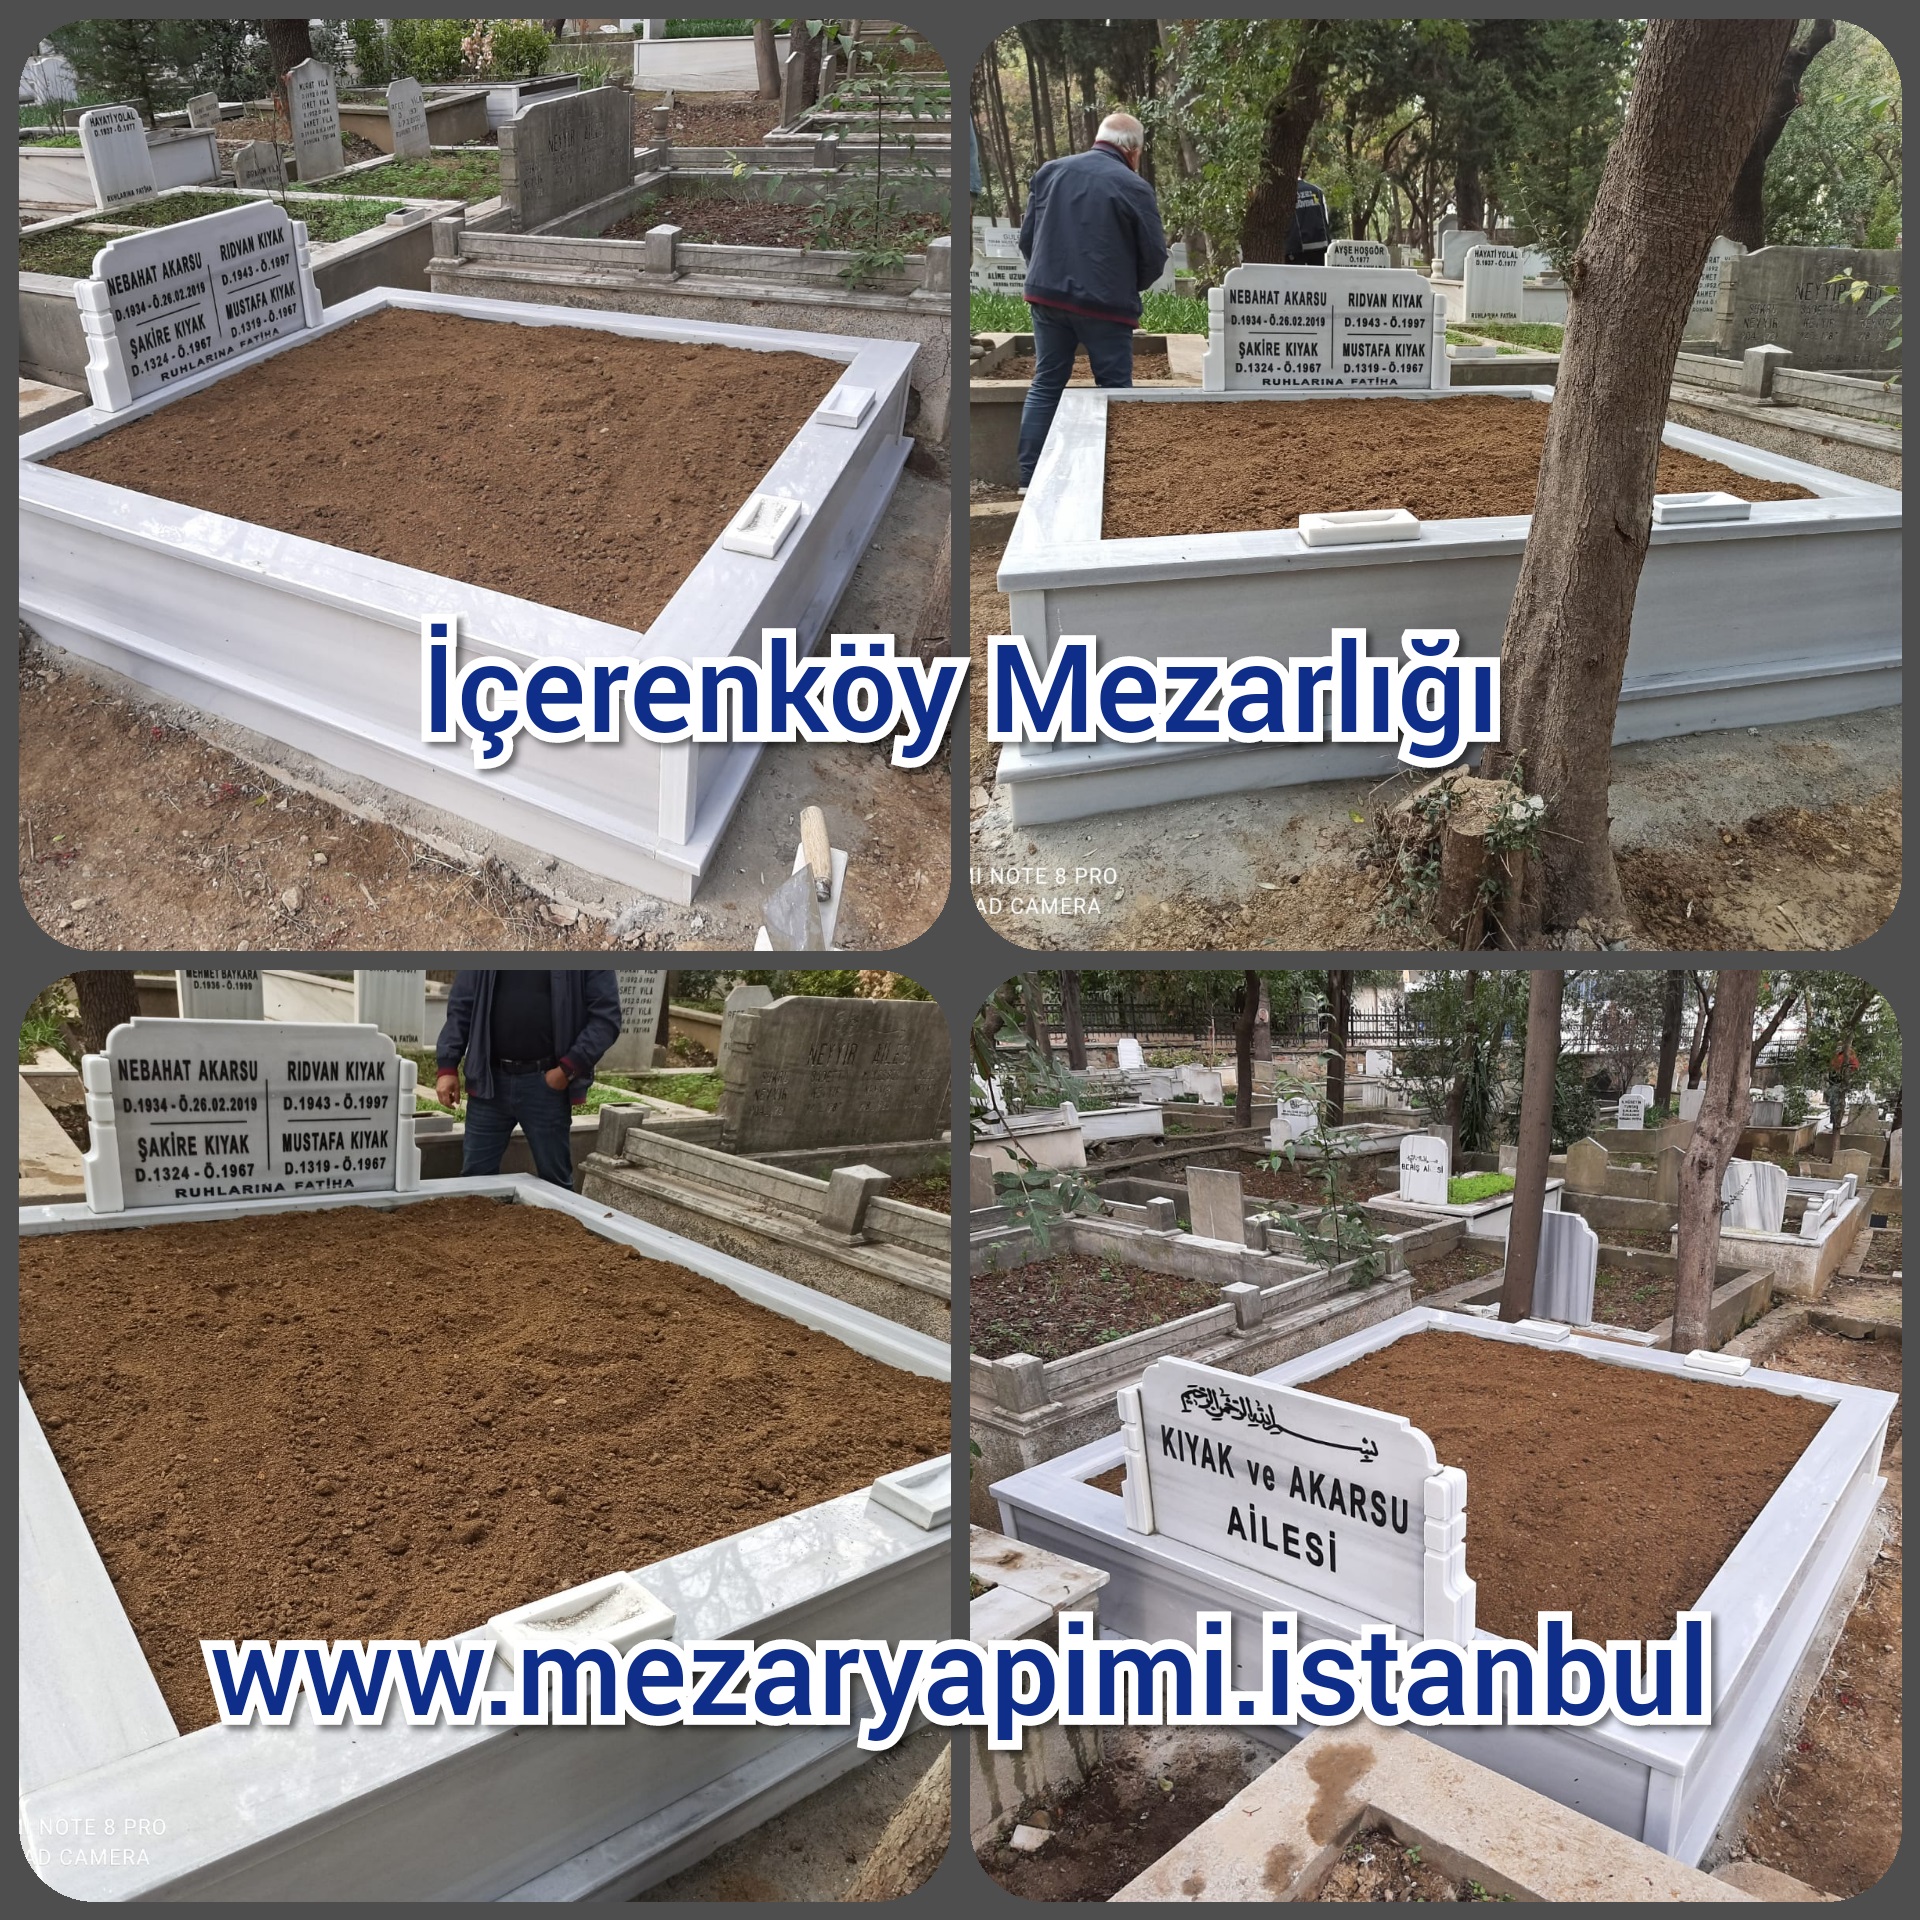 İçerenköy Mezarlığı Mezar Yapımı Kıyak Ailesi